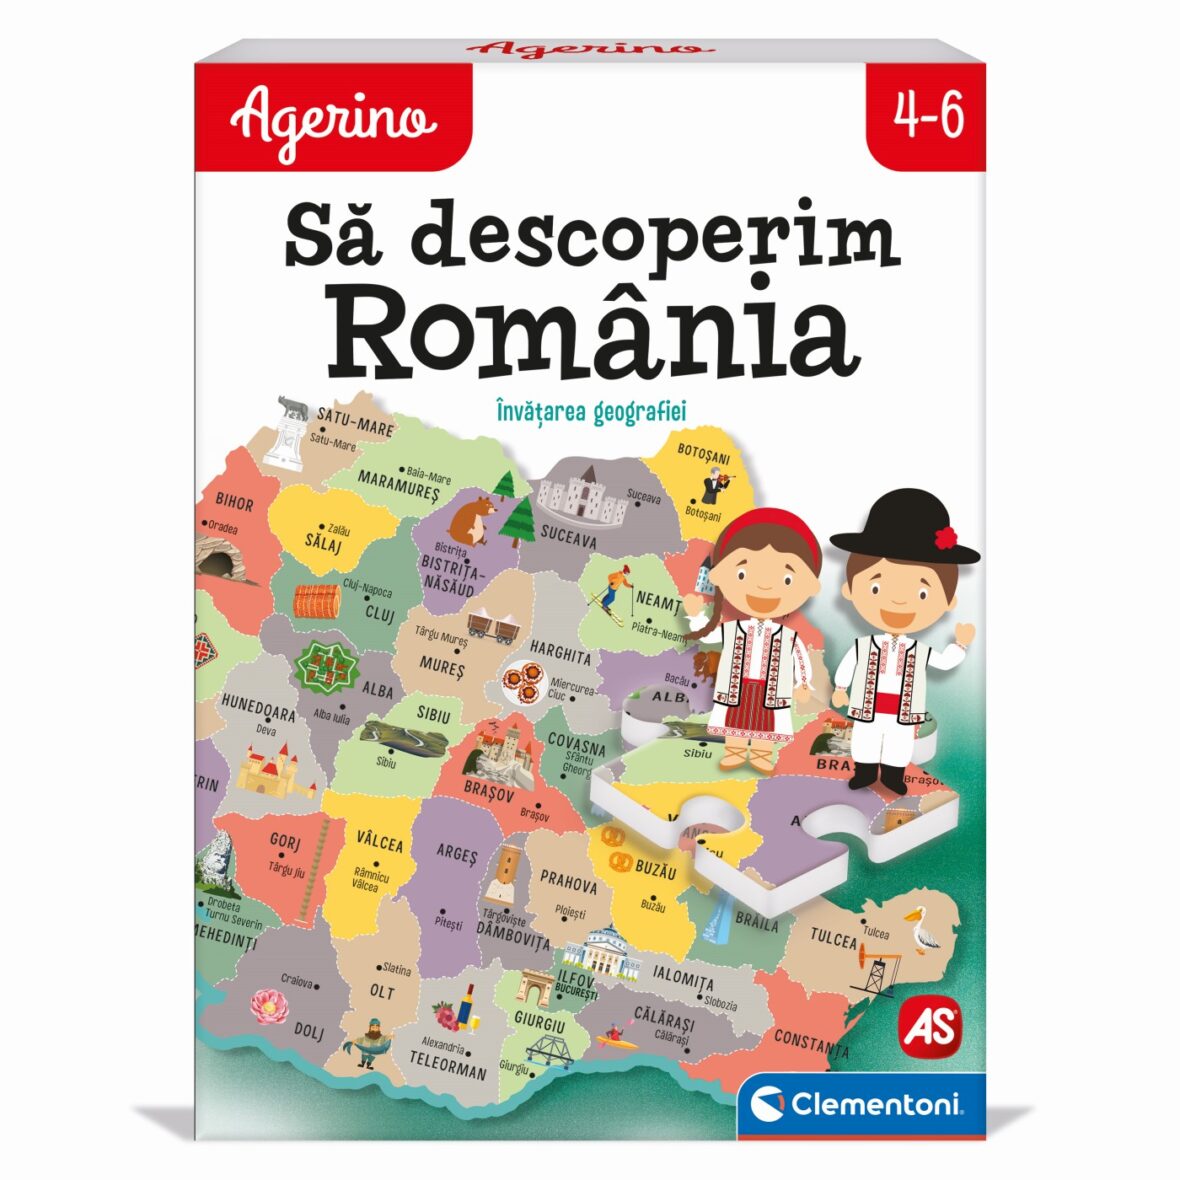 Agerino Sa Descoperim Romania Educativ